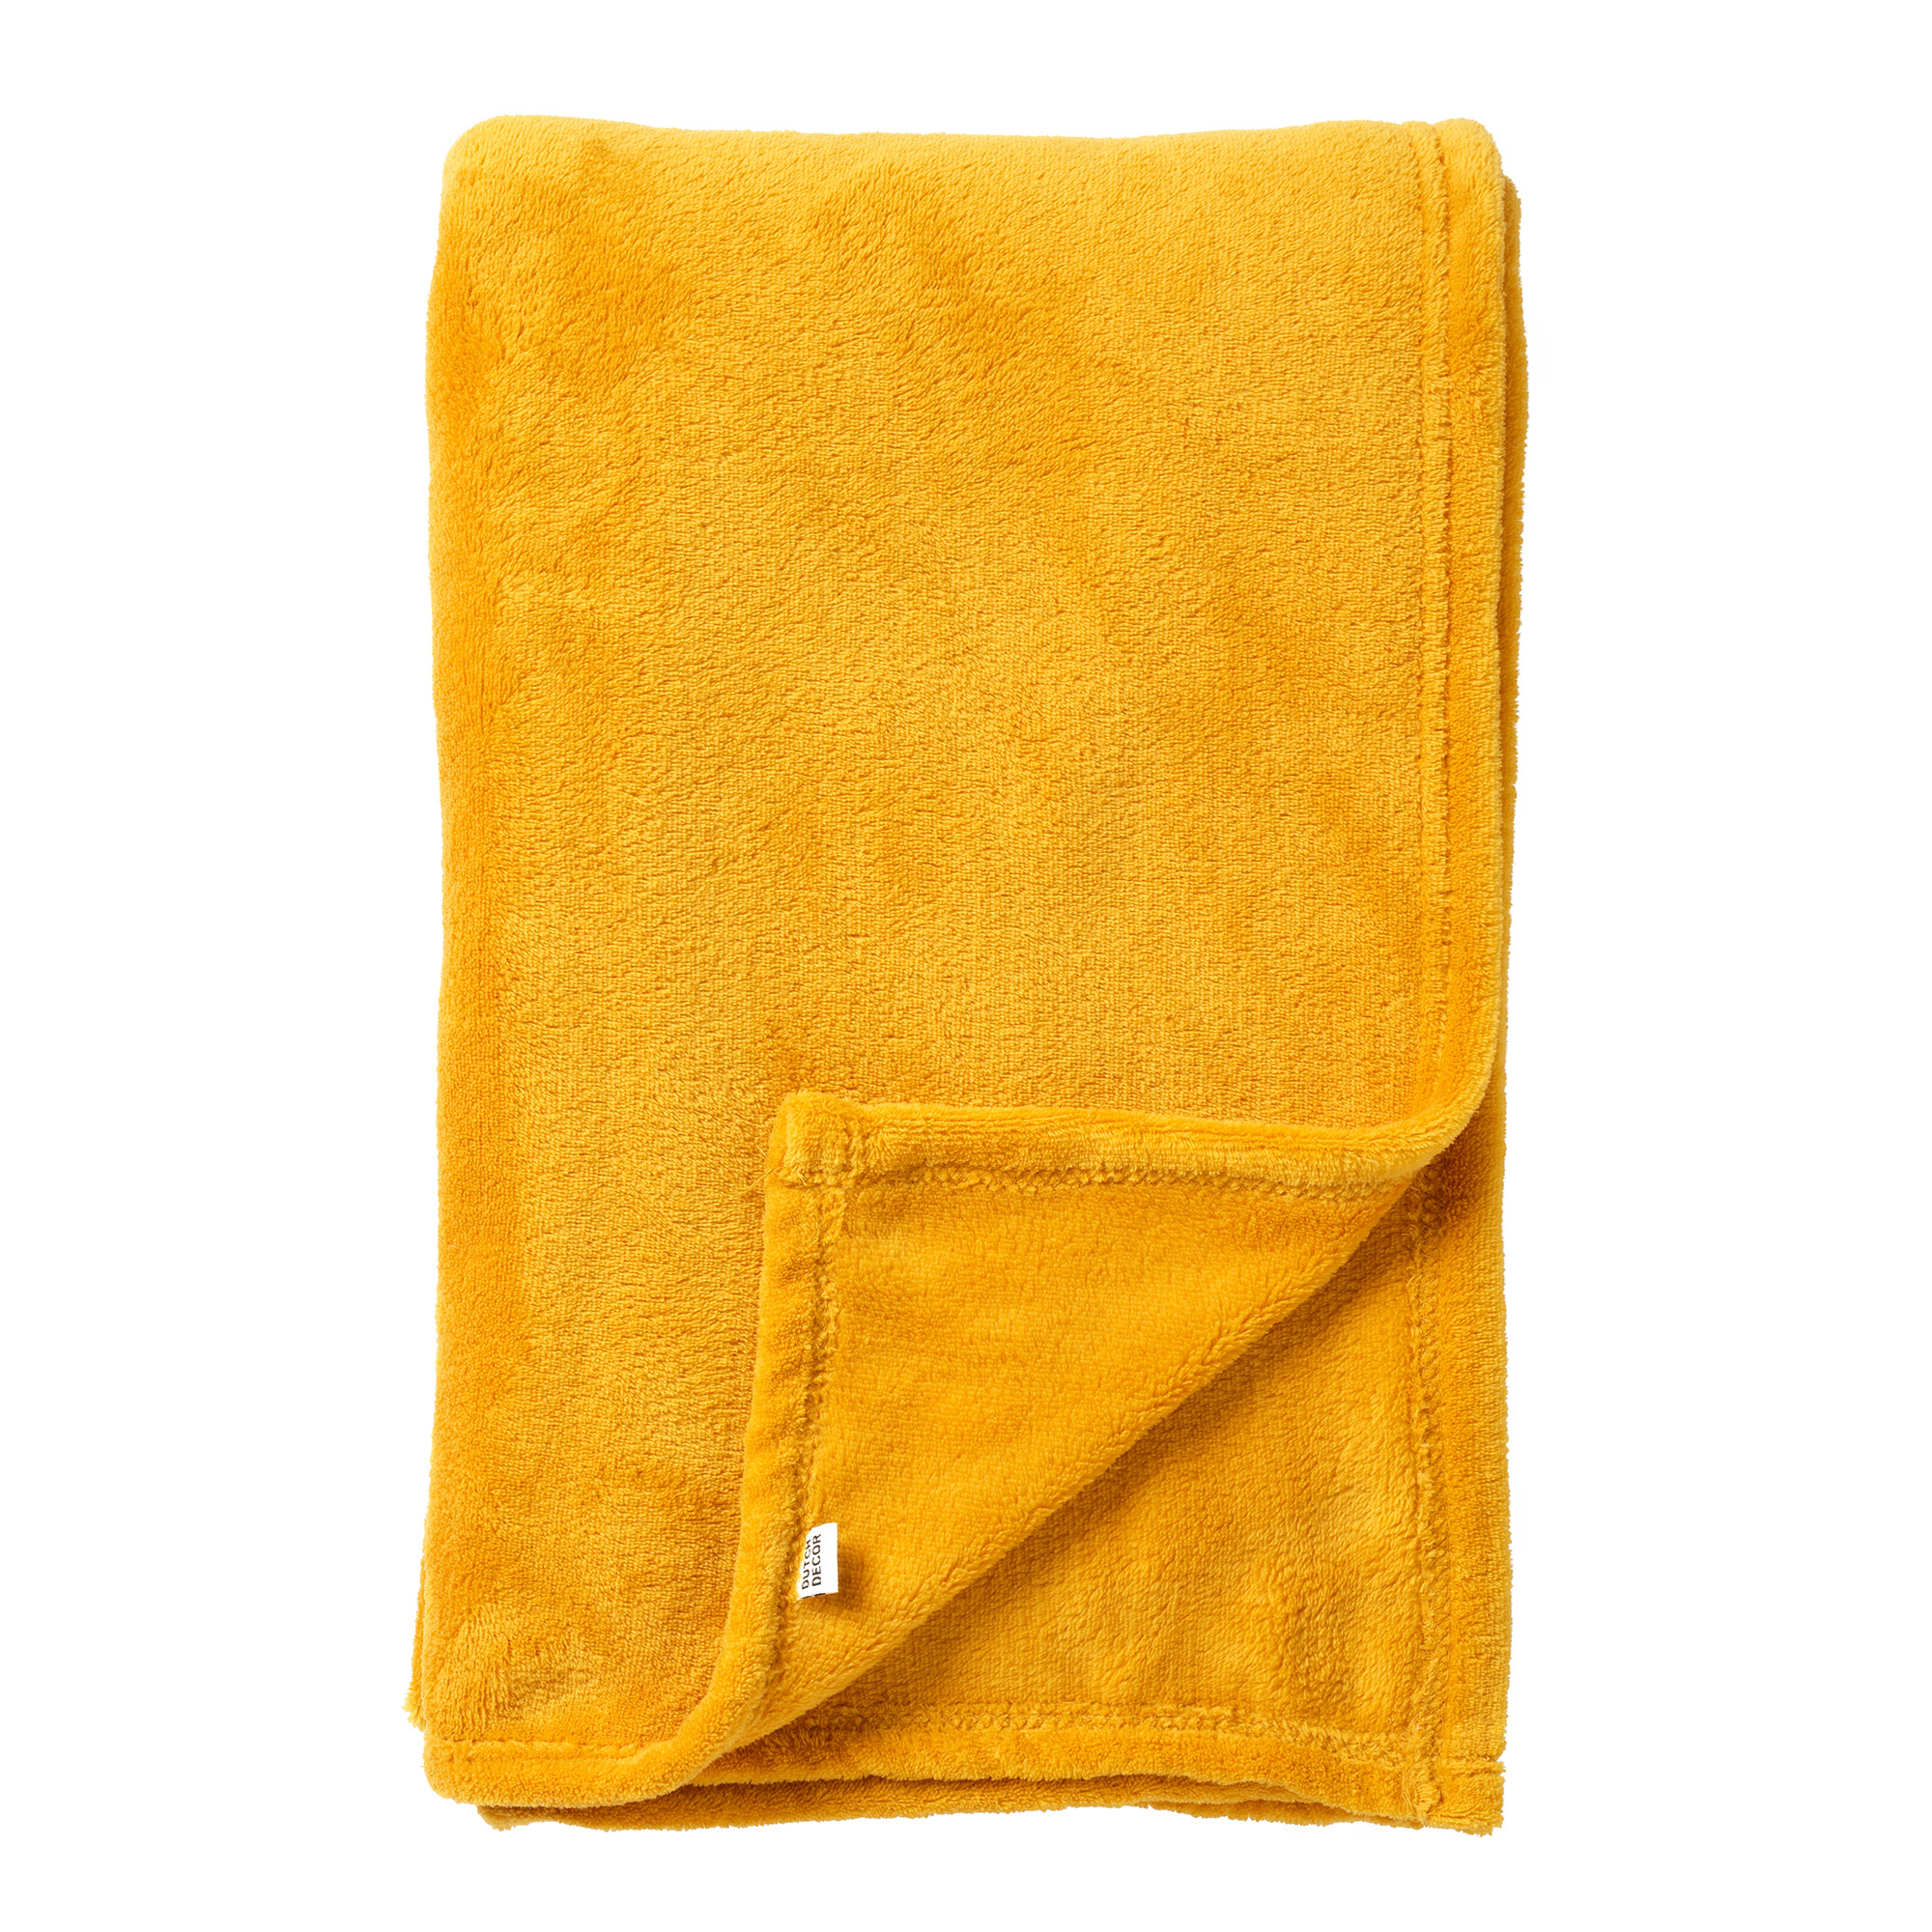 SIDNEY - Plaid Fleece deken van 100% gerecycled polyester – superzacht - Eco Line collectie 140x180 cm - Golden Glow - geel